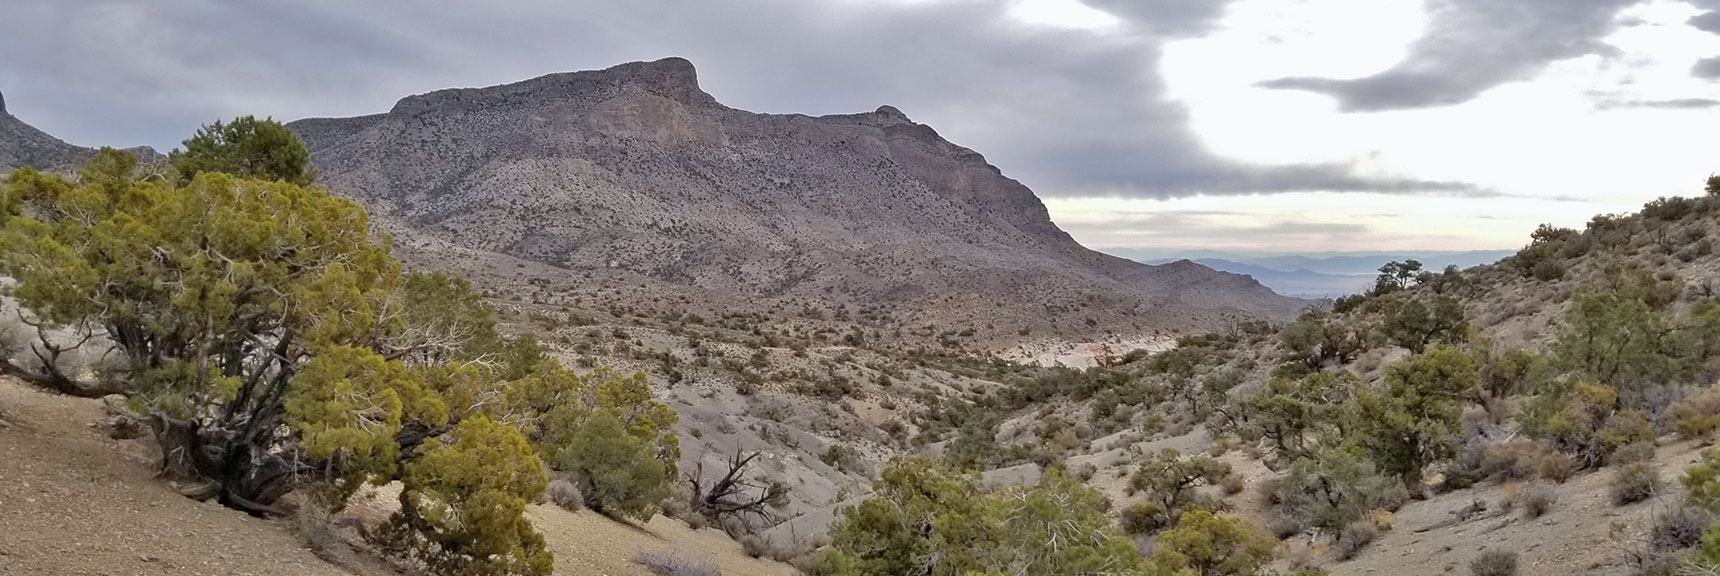 Damsel Peak in Calico Basin, Nevada 001